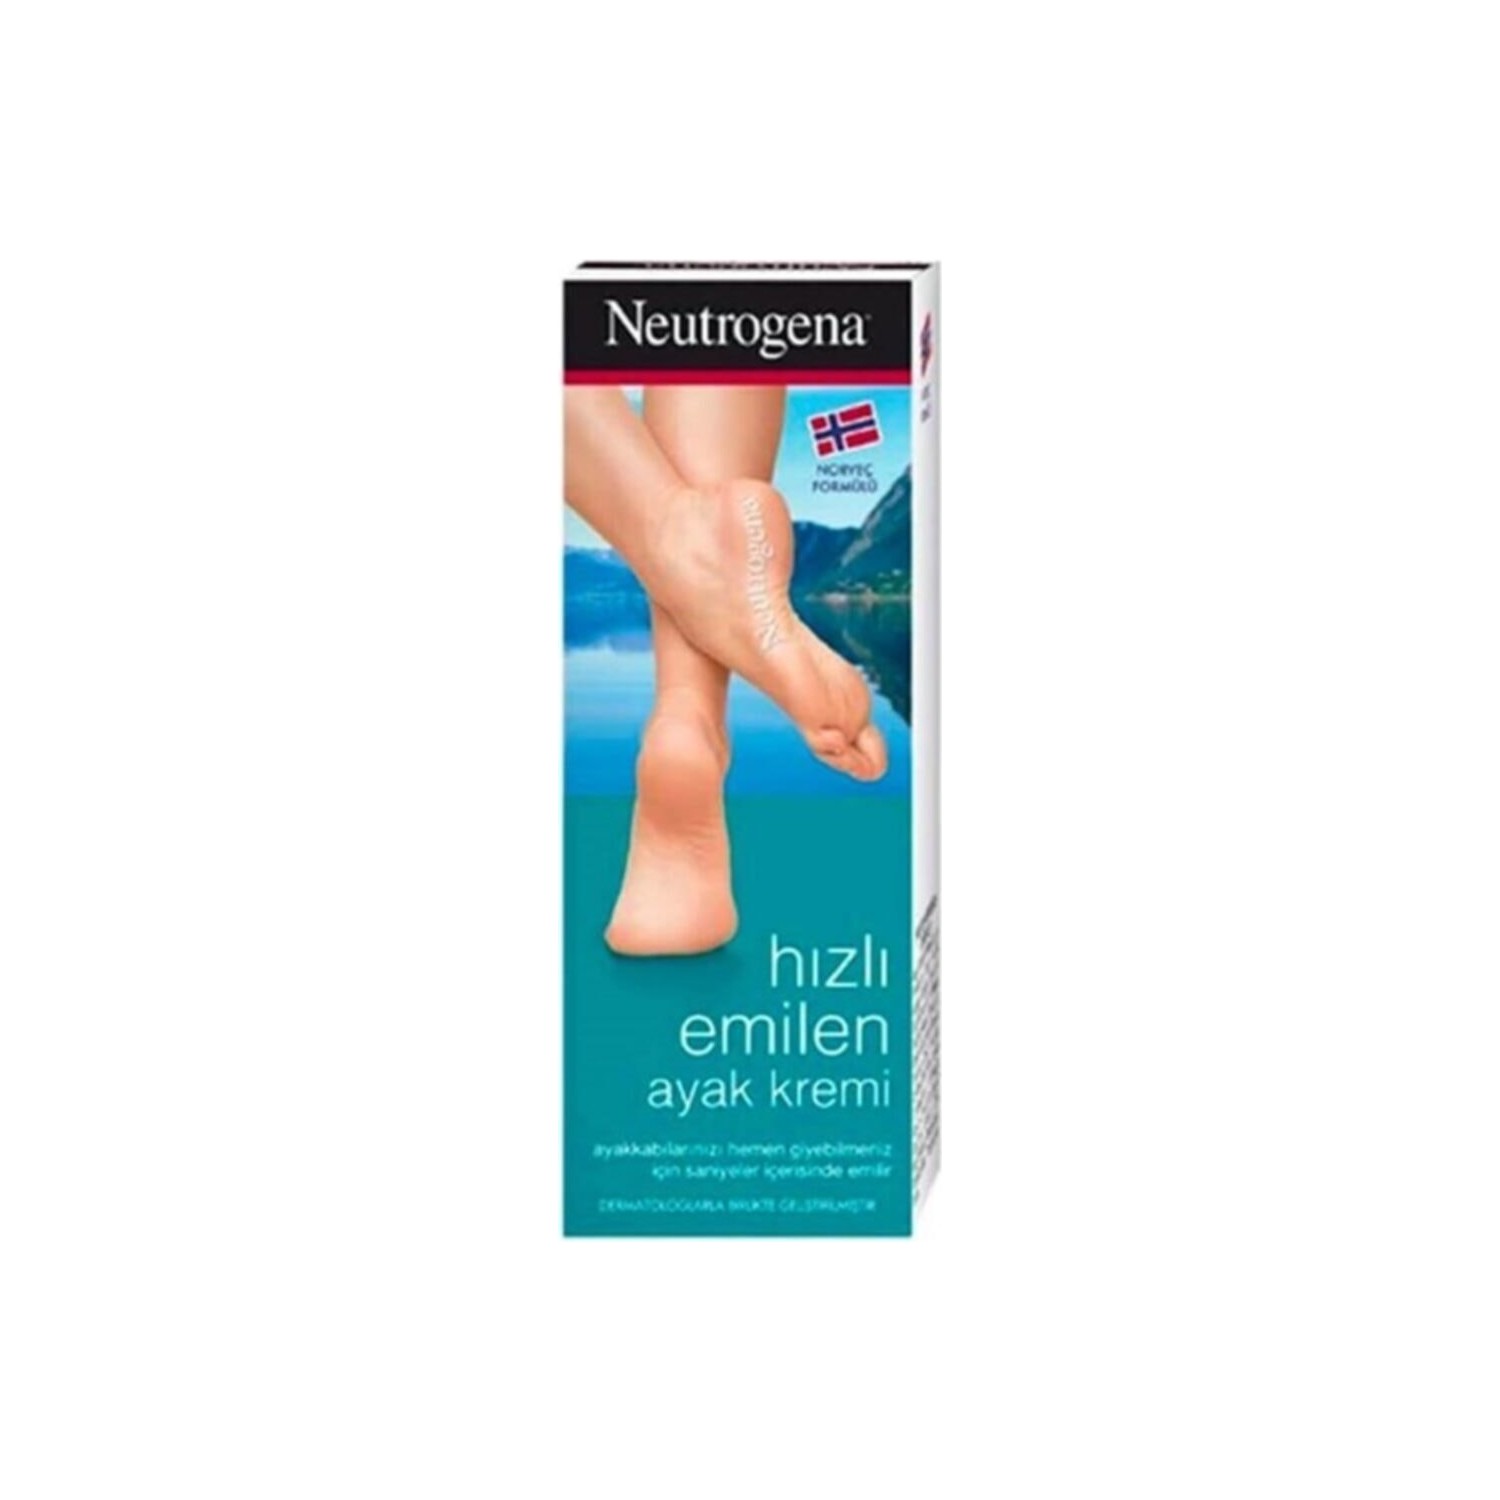 Быстровпитывающийся крем для ног Neutrogena, 100 мл быстровпитывающийся крем для ног neutrogena 100 мл